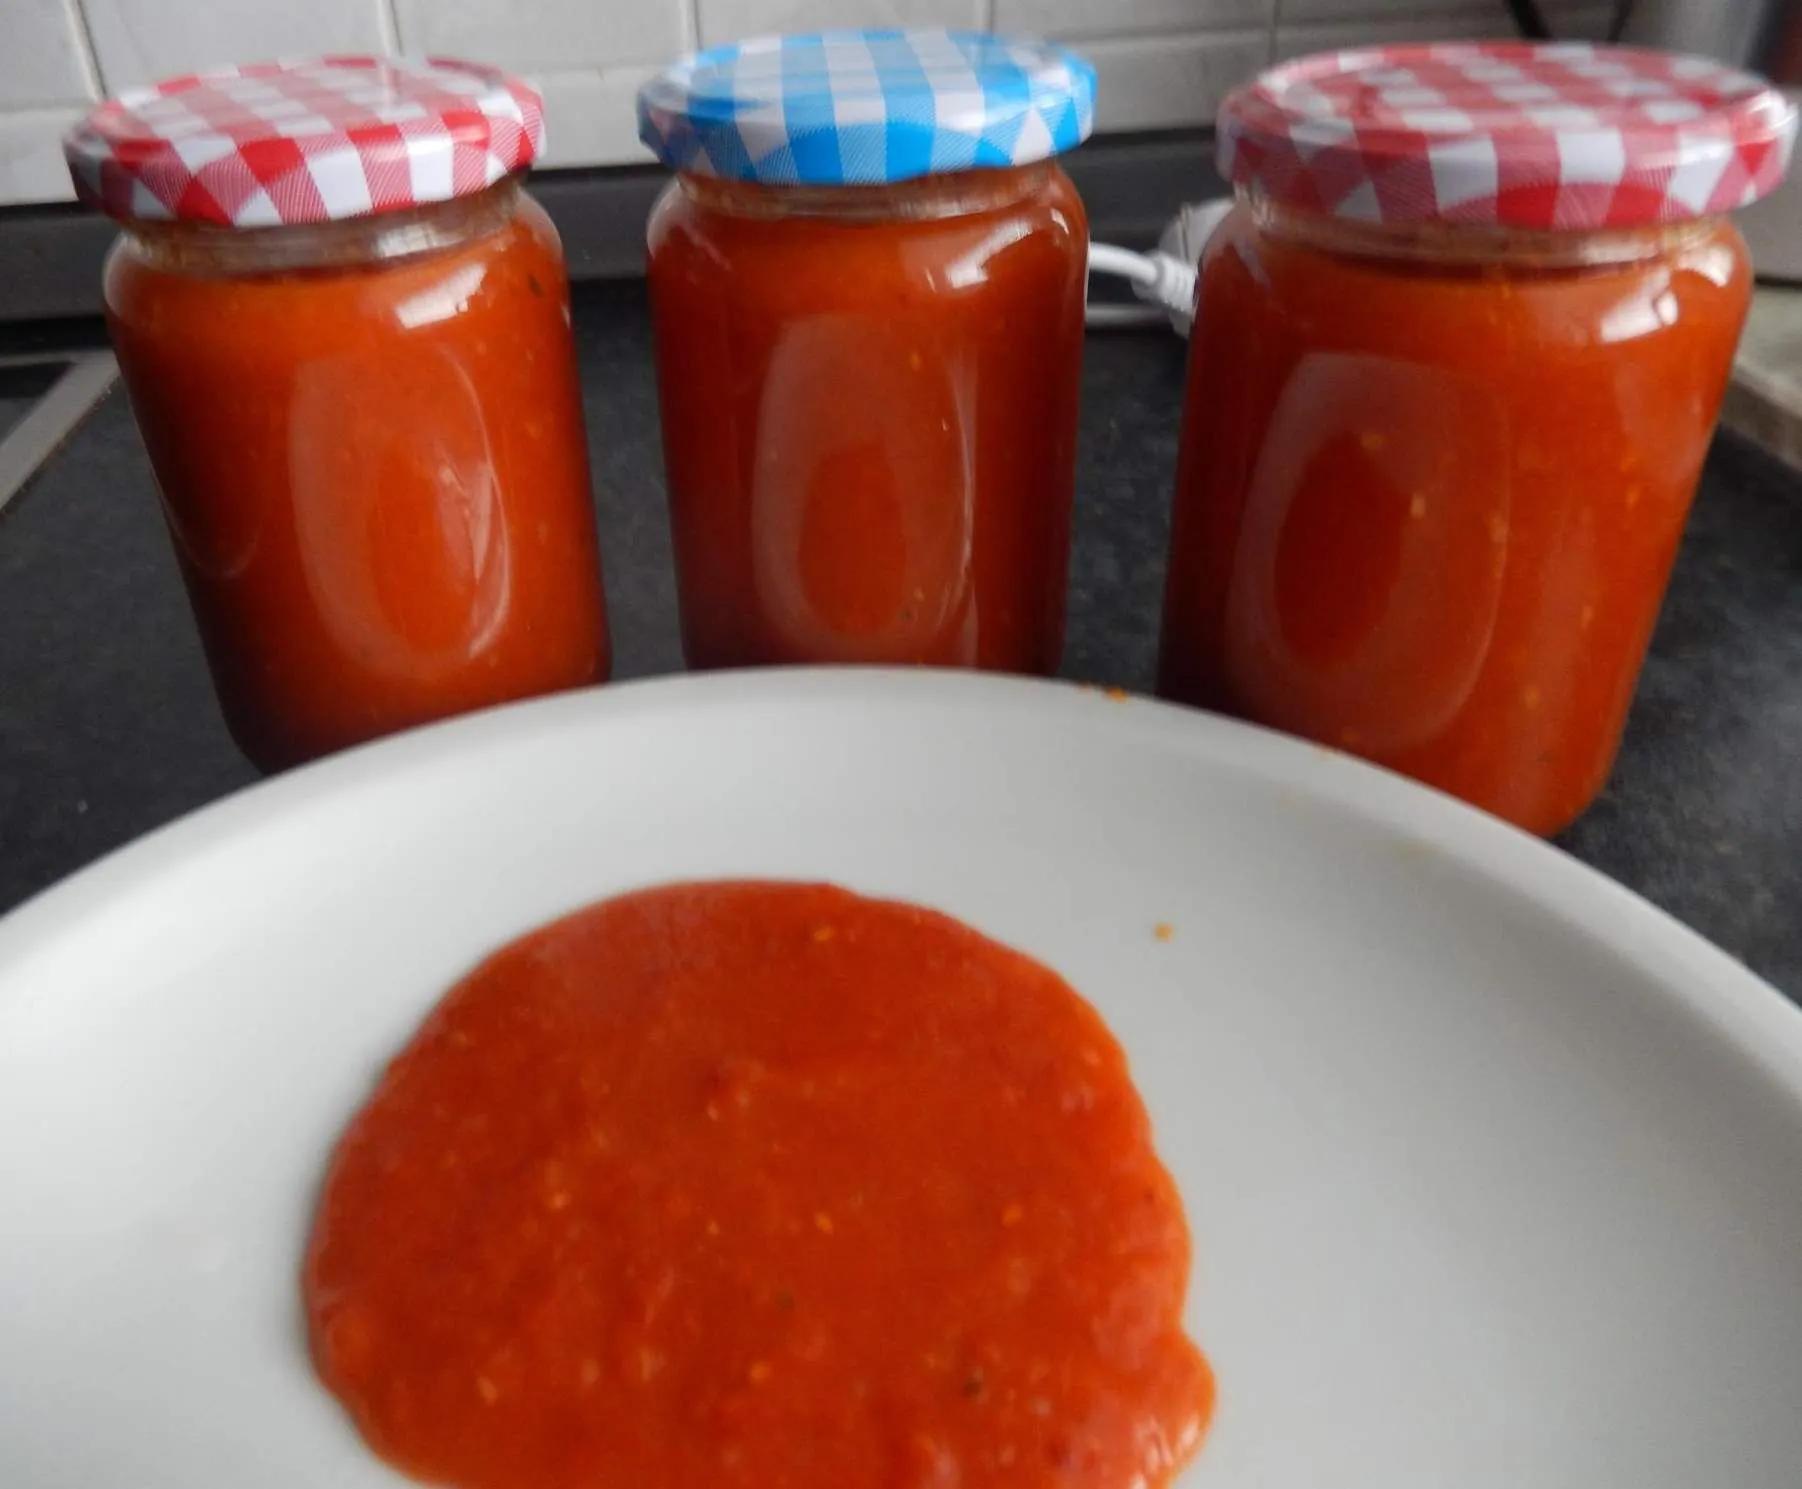 Ingwer - Ketchup | Rezept | Nockerl, Hildegard von bingen rezepte ...